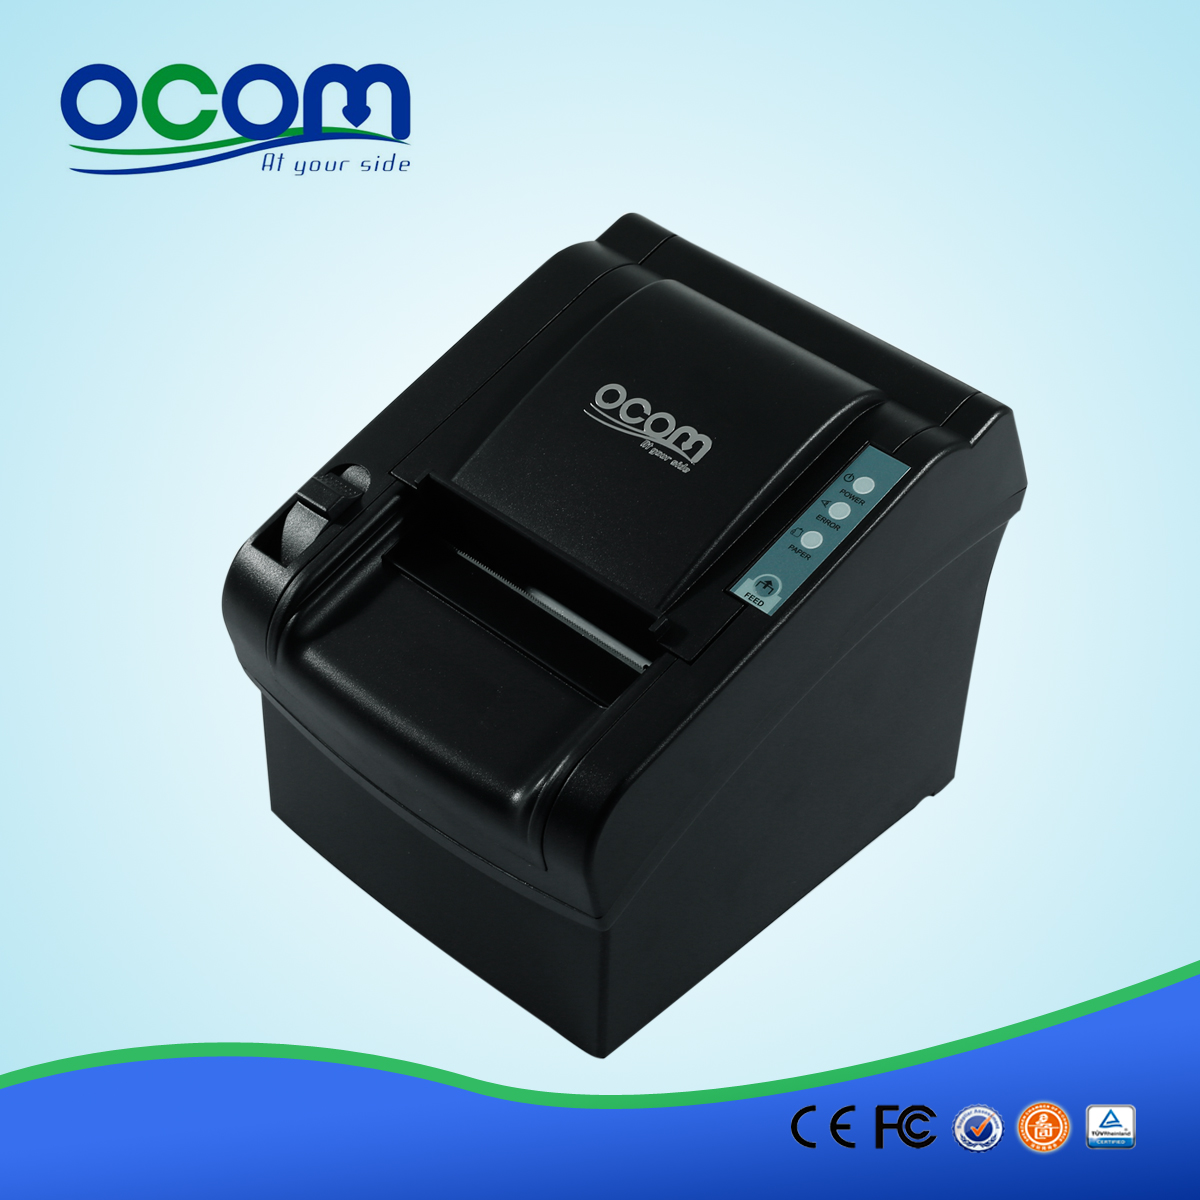 80毫米经典的热敏收据打印机OCPP-802